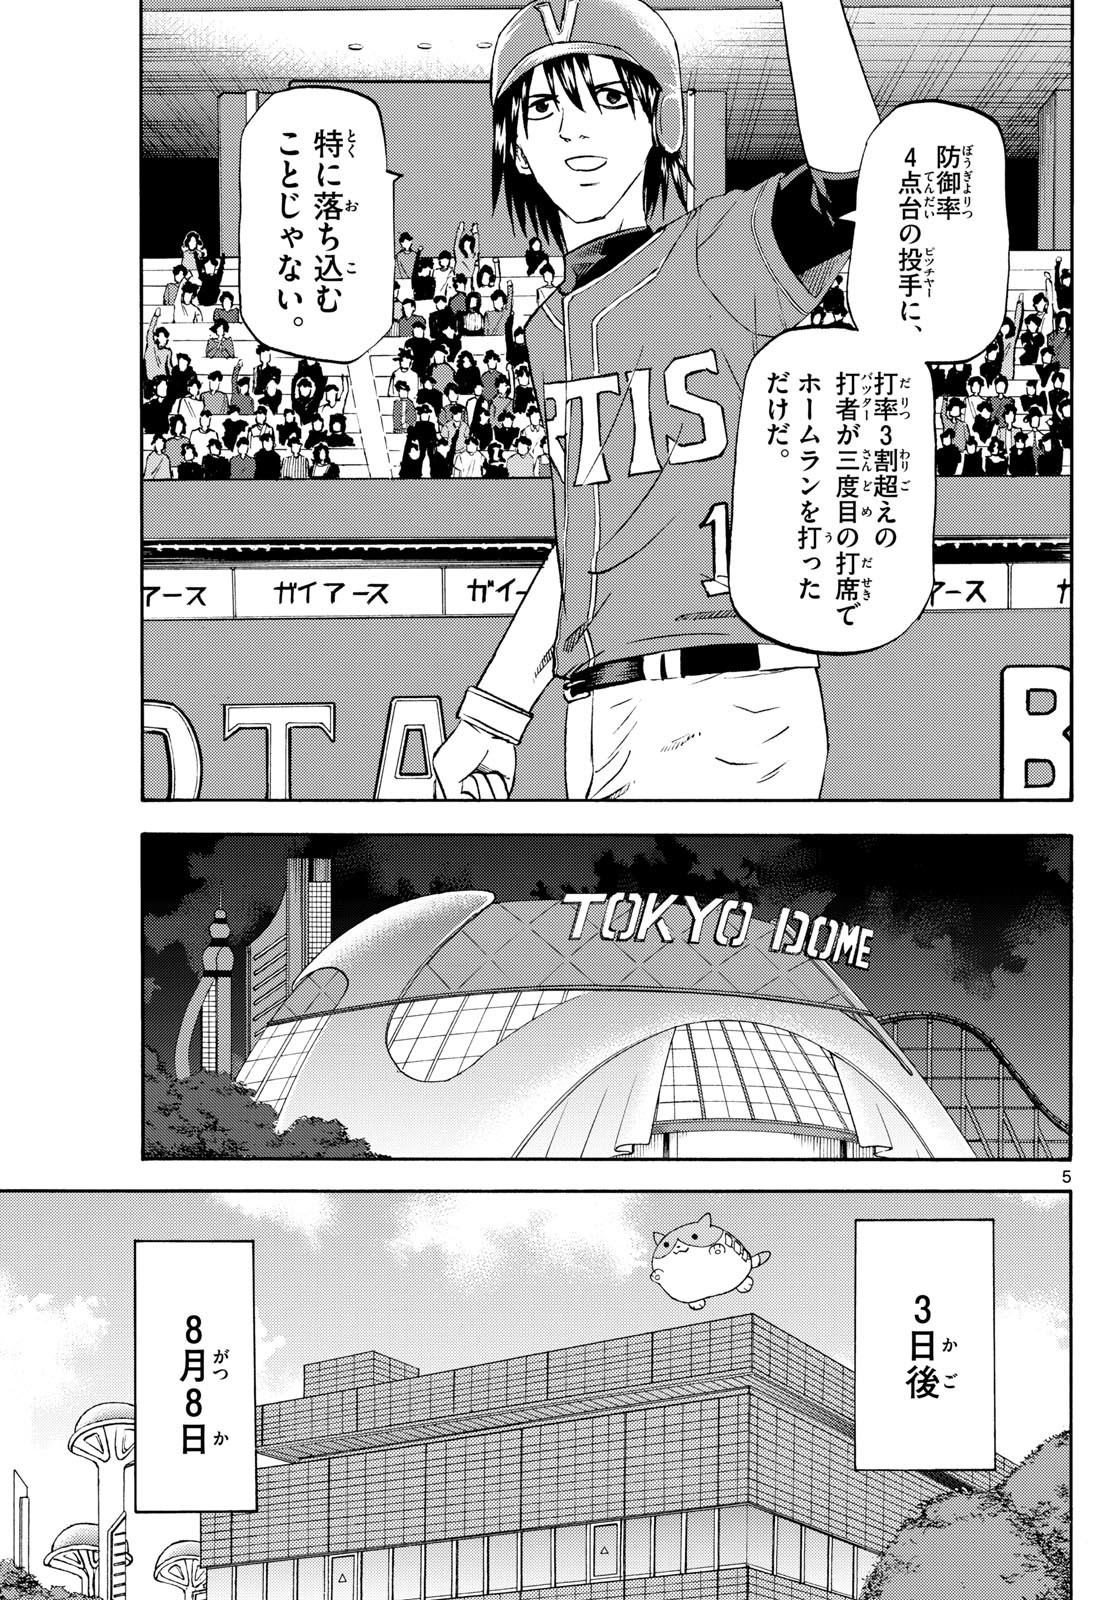 Ryu-to-Ichigo - Chapter 197 - Page 5